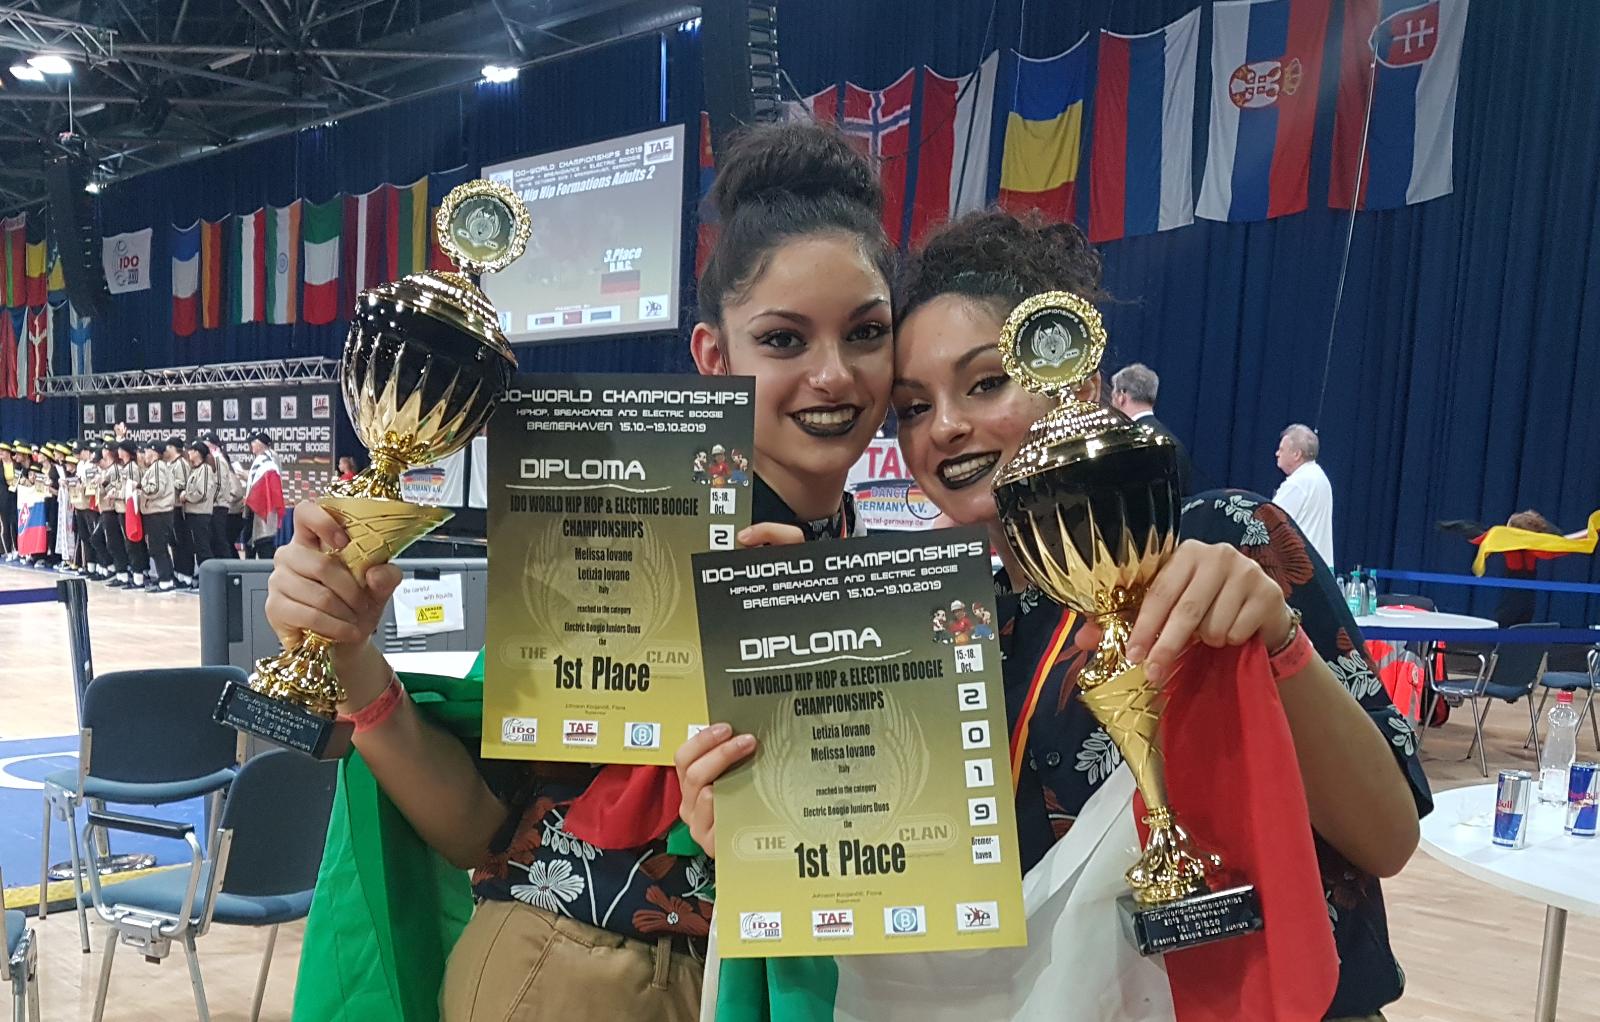 Italia campione del mondo nell’Electric Boogie Duos